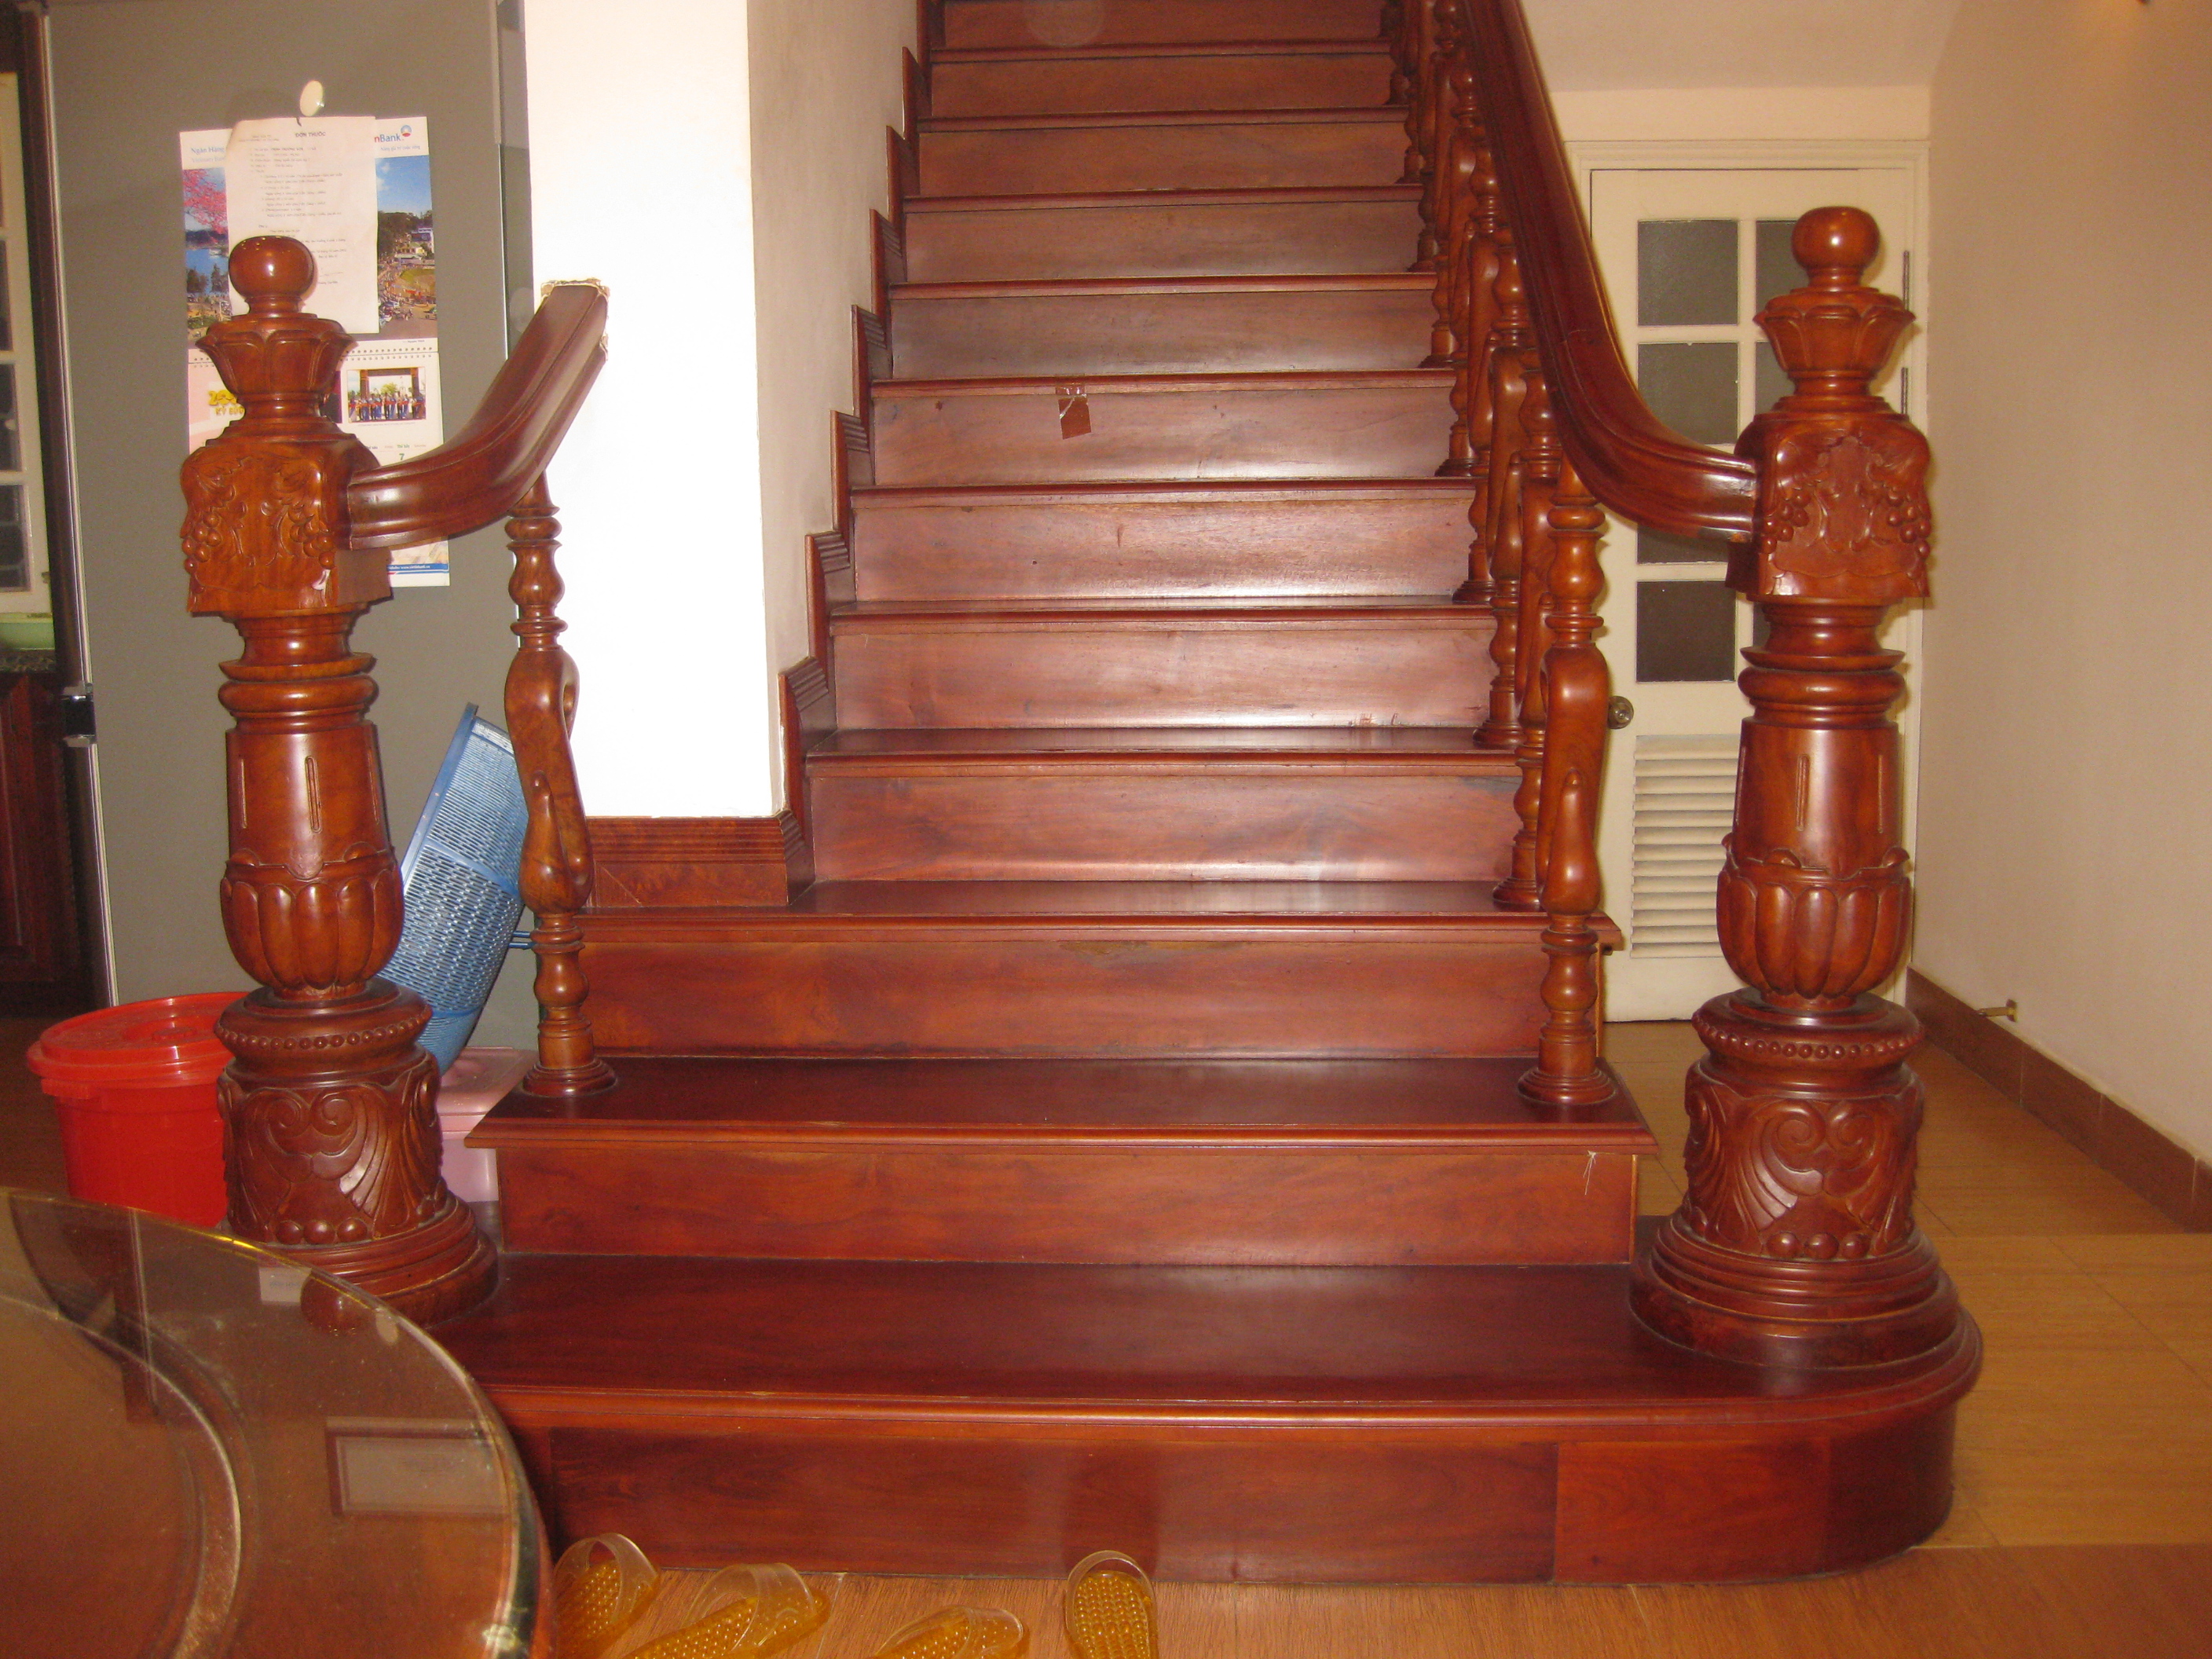 Tổng hợp các mẫu cầu thang gỗ đẹp nhất dành cho ngôi nhà của bạn - [Kích thước hình ảnh: 2816x2112 px]